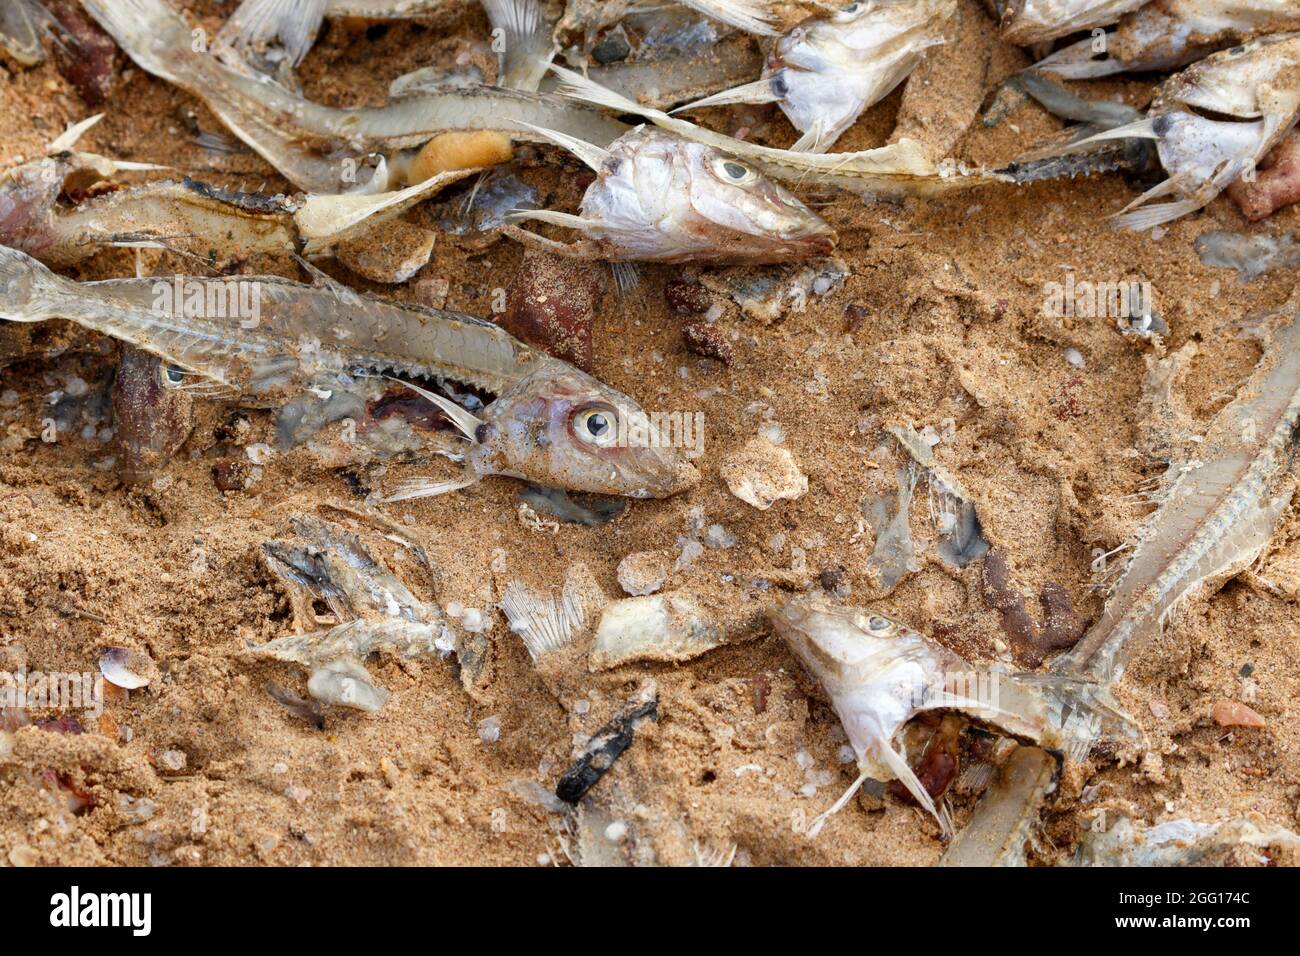 Ausrangierte Fische am Strand Redcliffe, Queensland, Australien Stockfoto